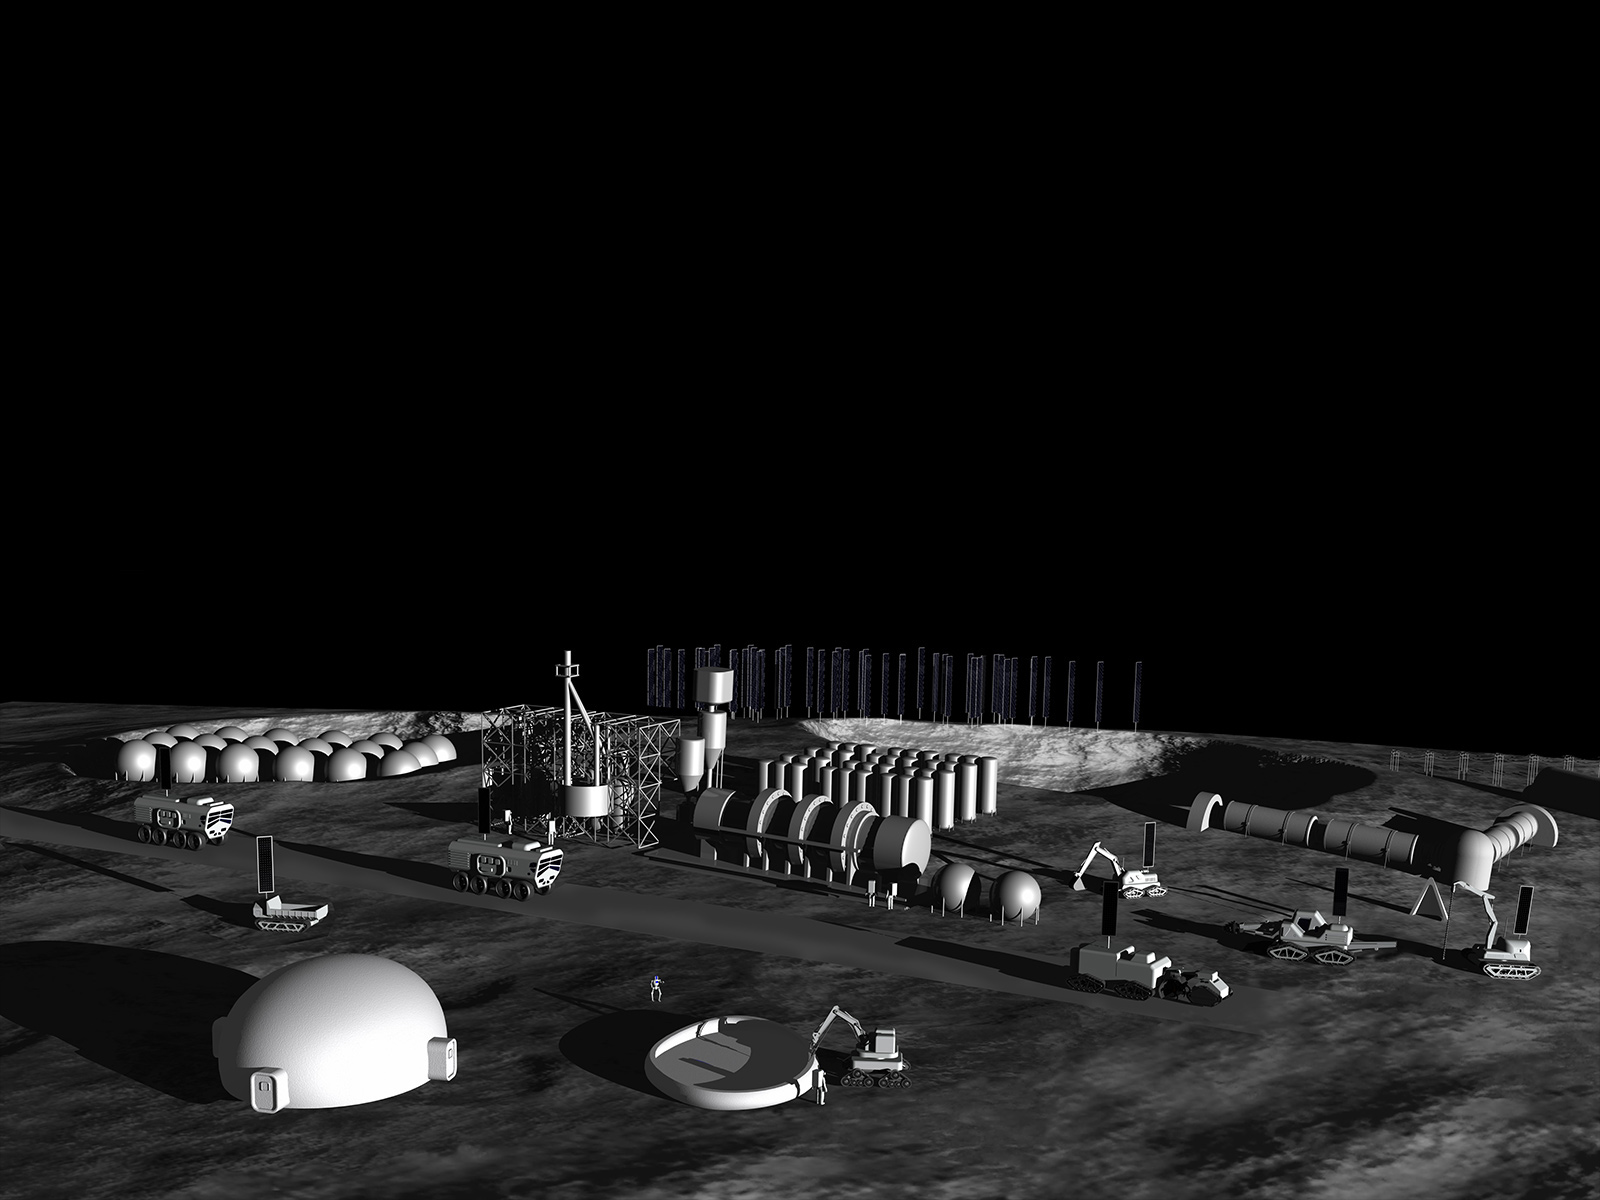 Main visual CG Image of Luna base